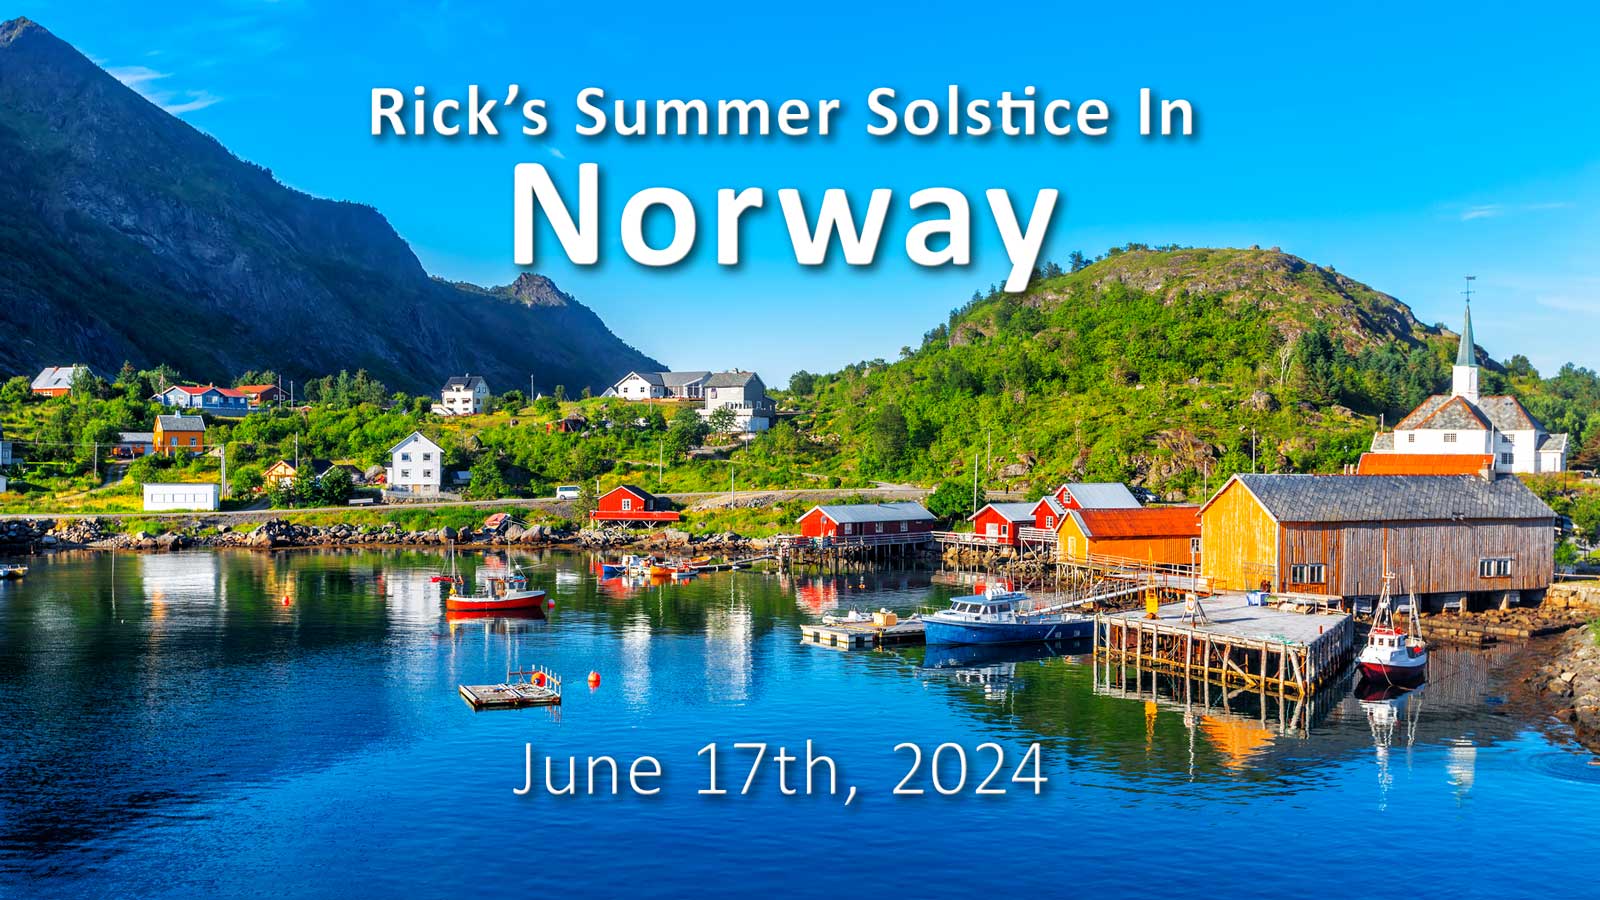 Rick's Summer Solstice in Norway